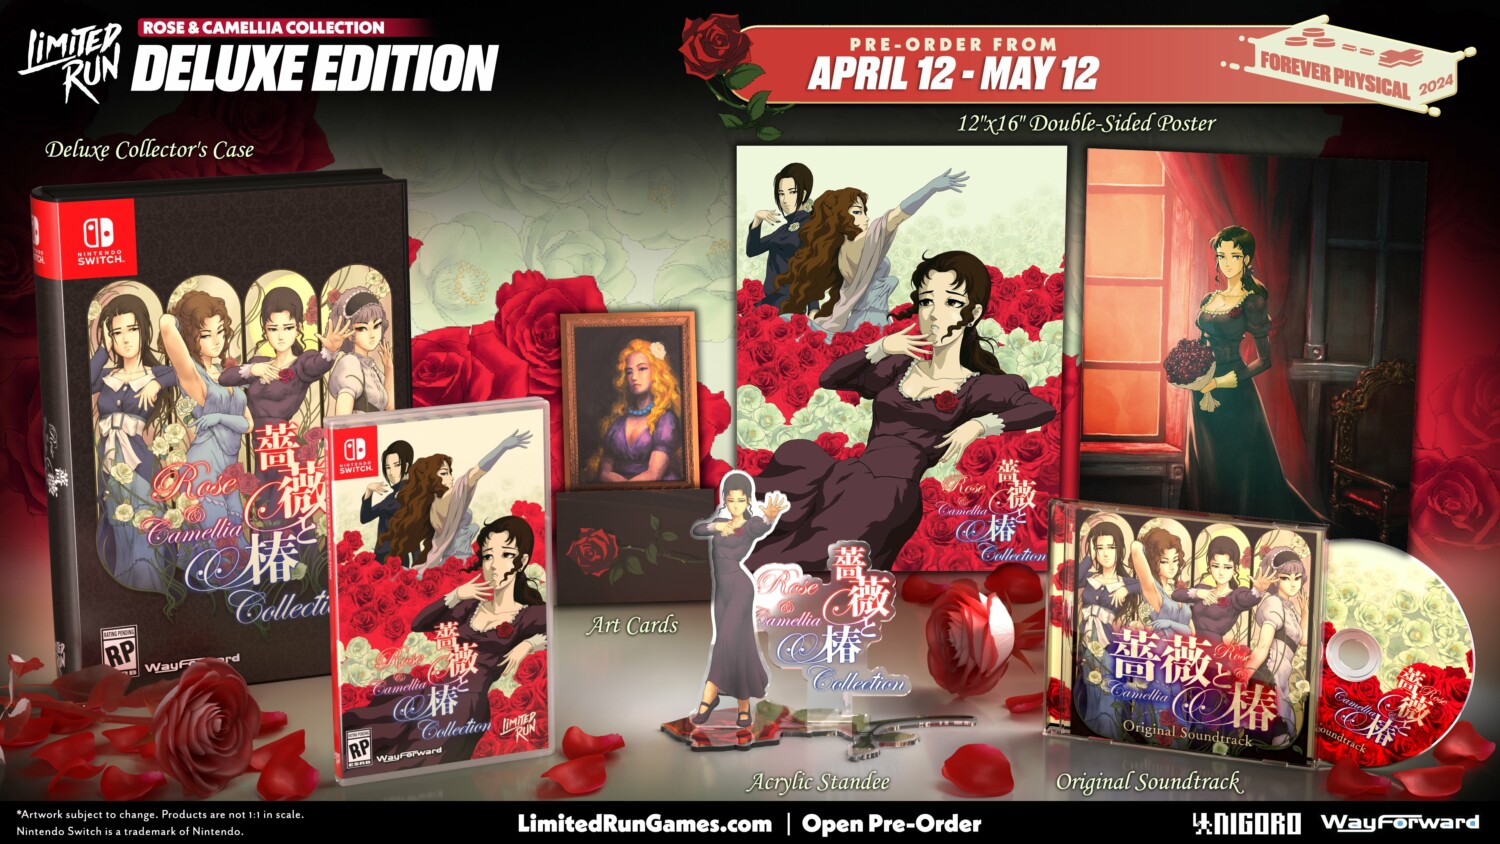 Rose & Camellia Collection llegará a Nintendo Switch el 16 de abril 14